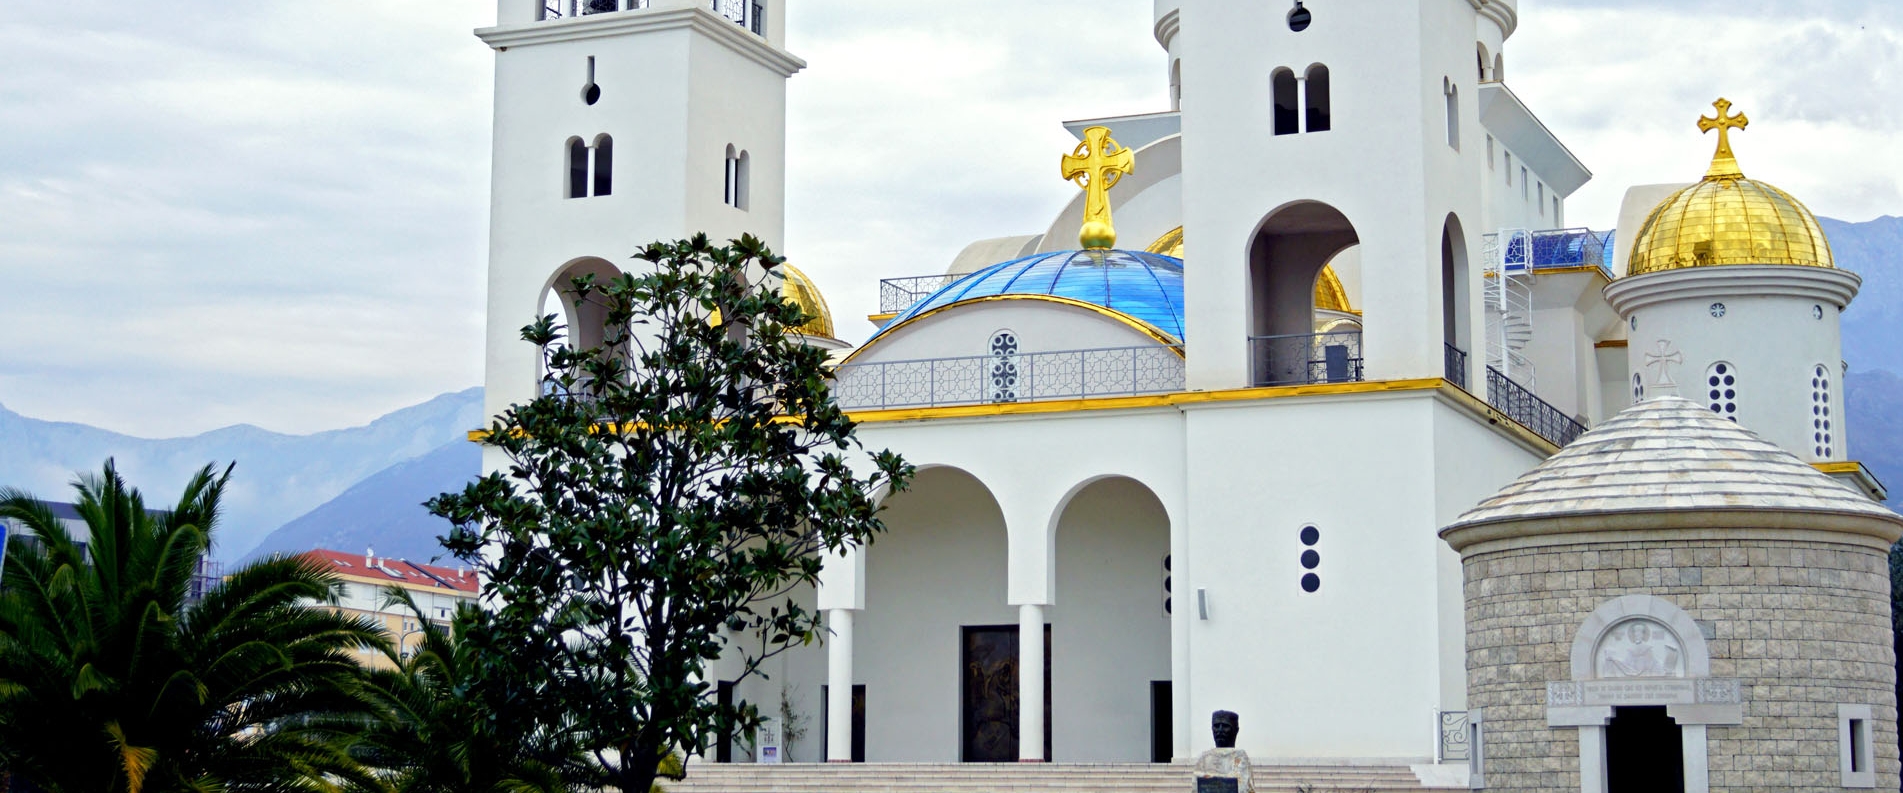 Церковь Святого Иоанна Владимира в Баре